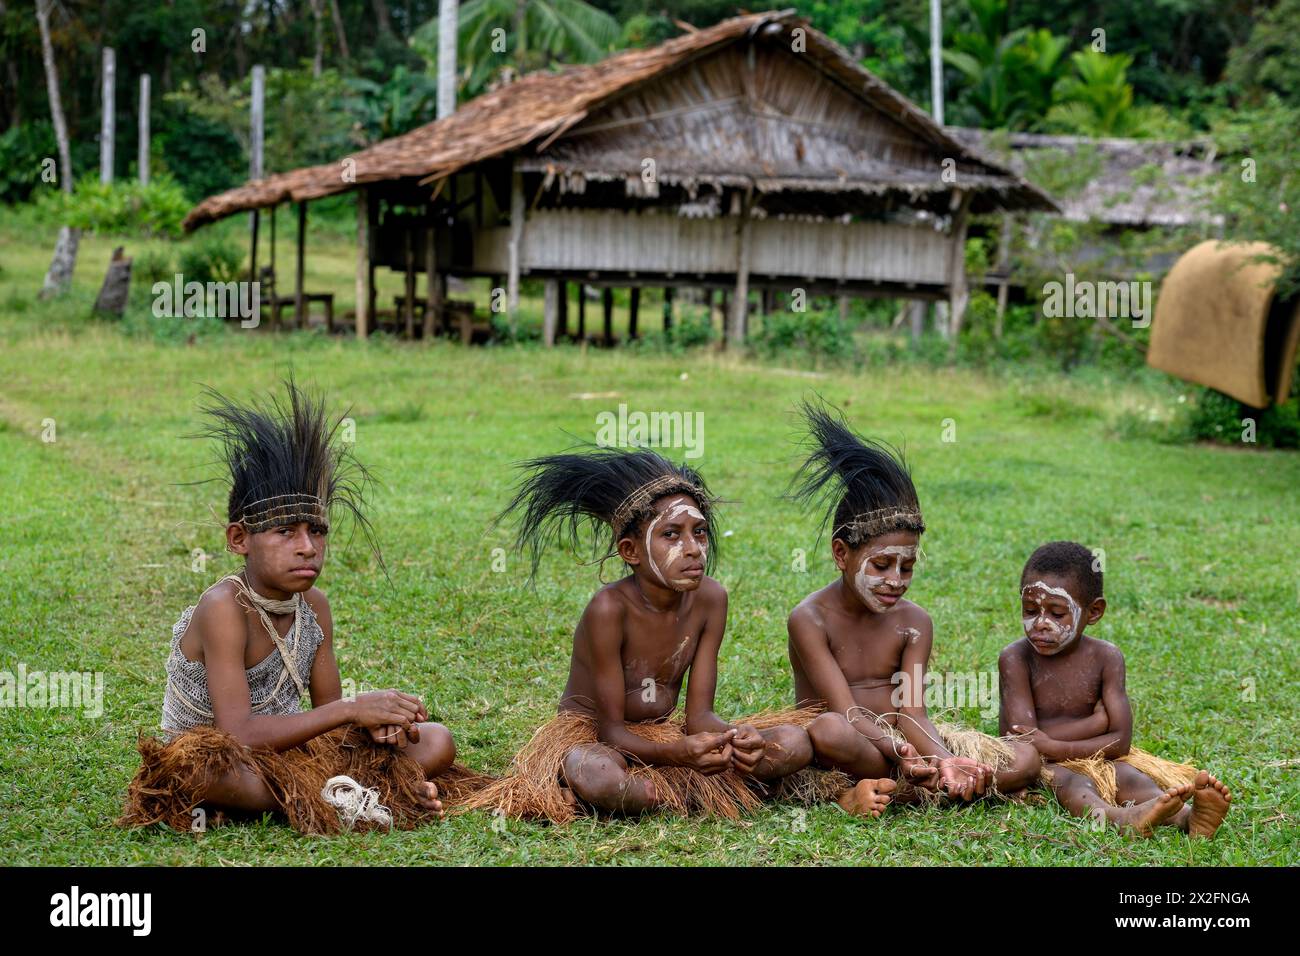 Géographie / voyage, Papouasie-Nouvelle-Guinée, enfants avec coiffe en plumes de Cassowary Feathers, ADDITIONAL-RIGHTS-CLEARANCE-INFO-NOT-AVAILABLE Banque D'Images